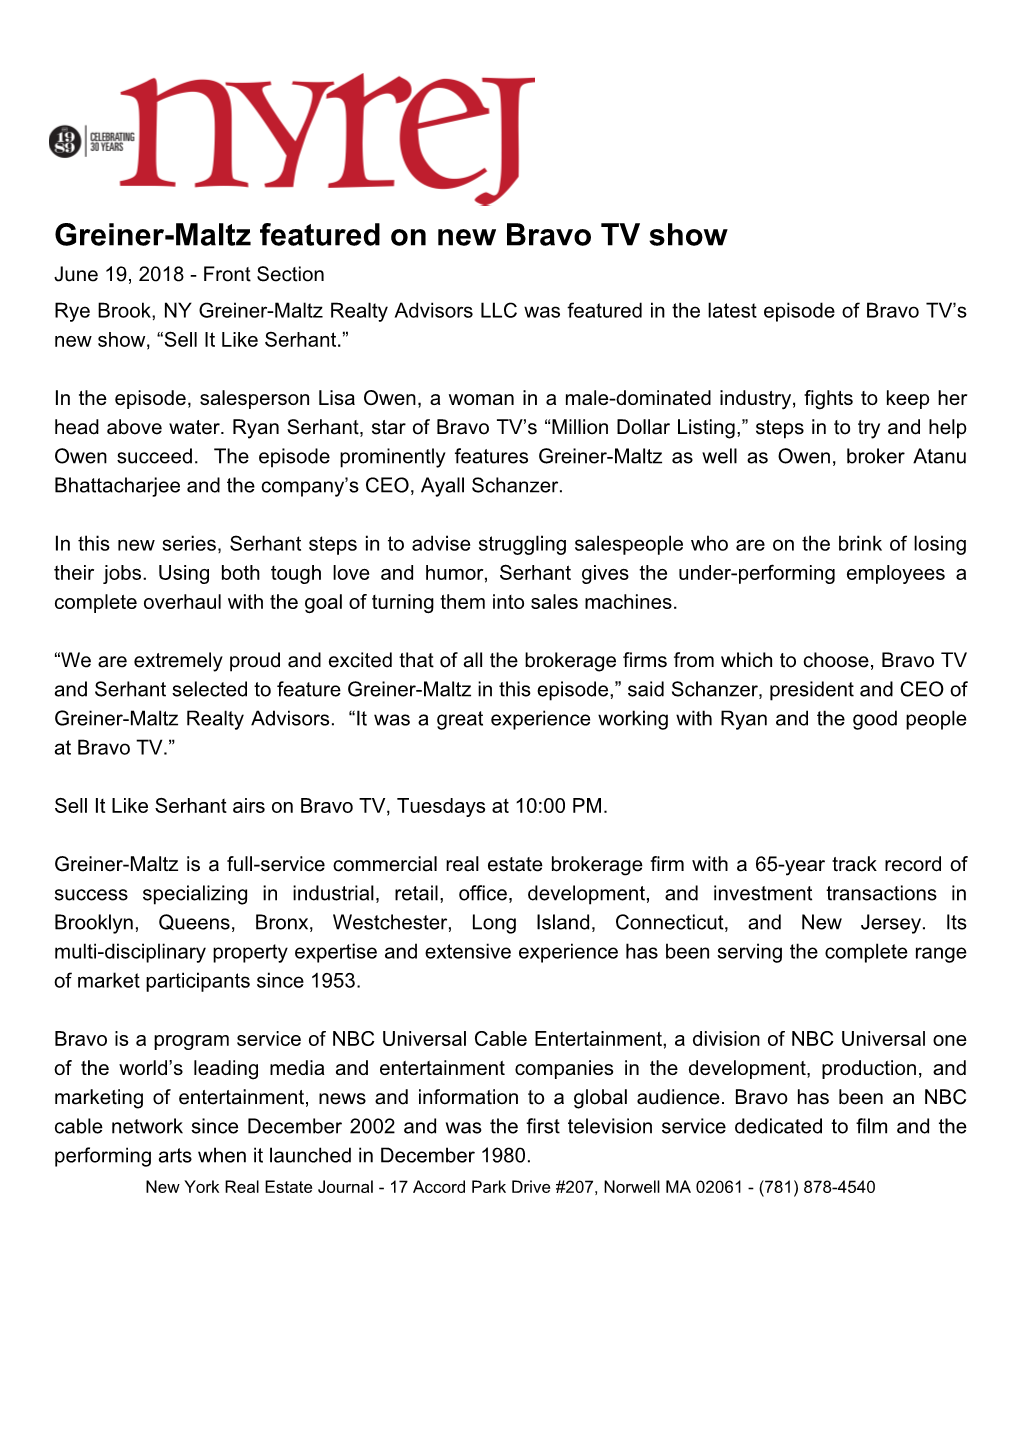 Greiner-Maltz Featured on New Bravo TV Show